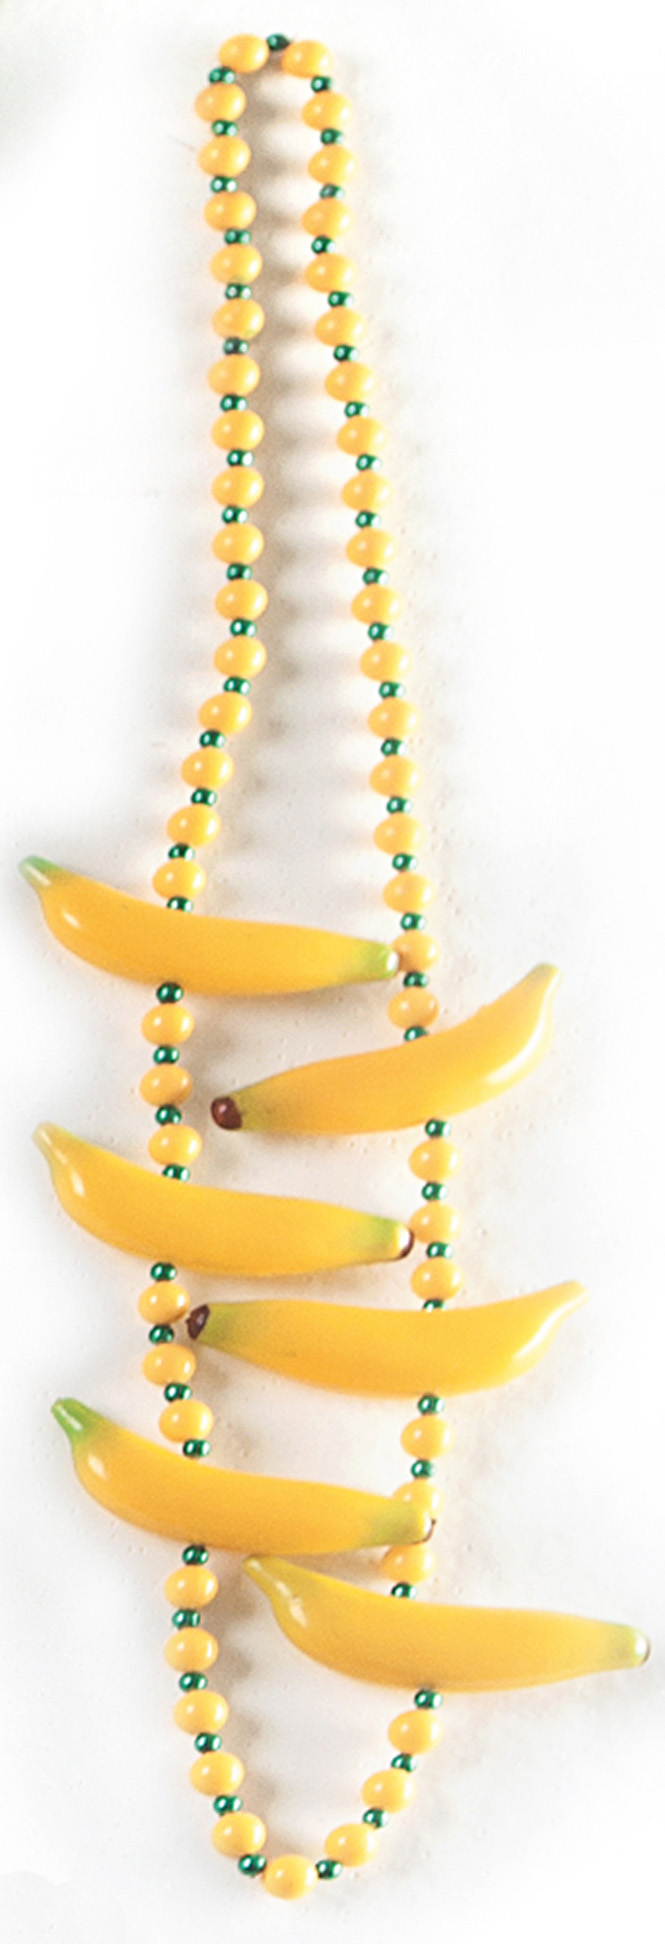 Colar de bananas: “Ano passado, saí de Chiquita Bacana.”